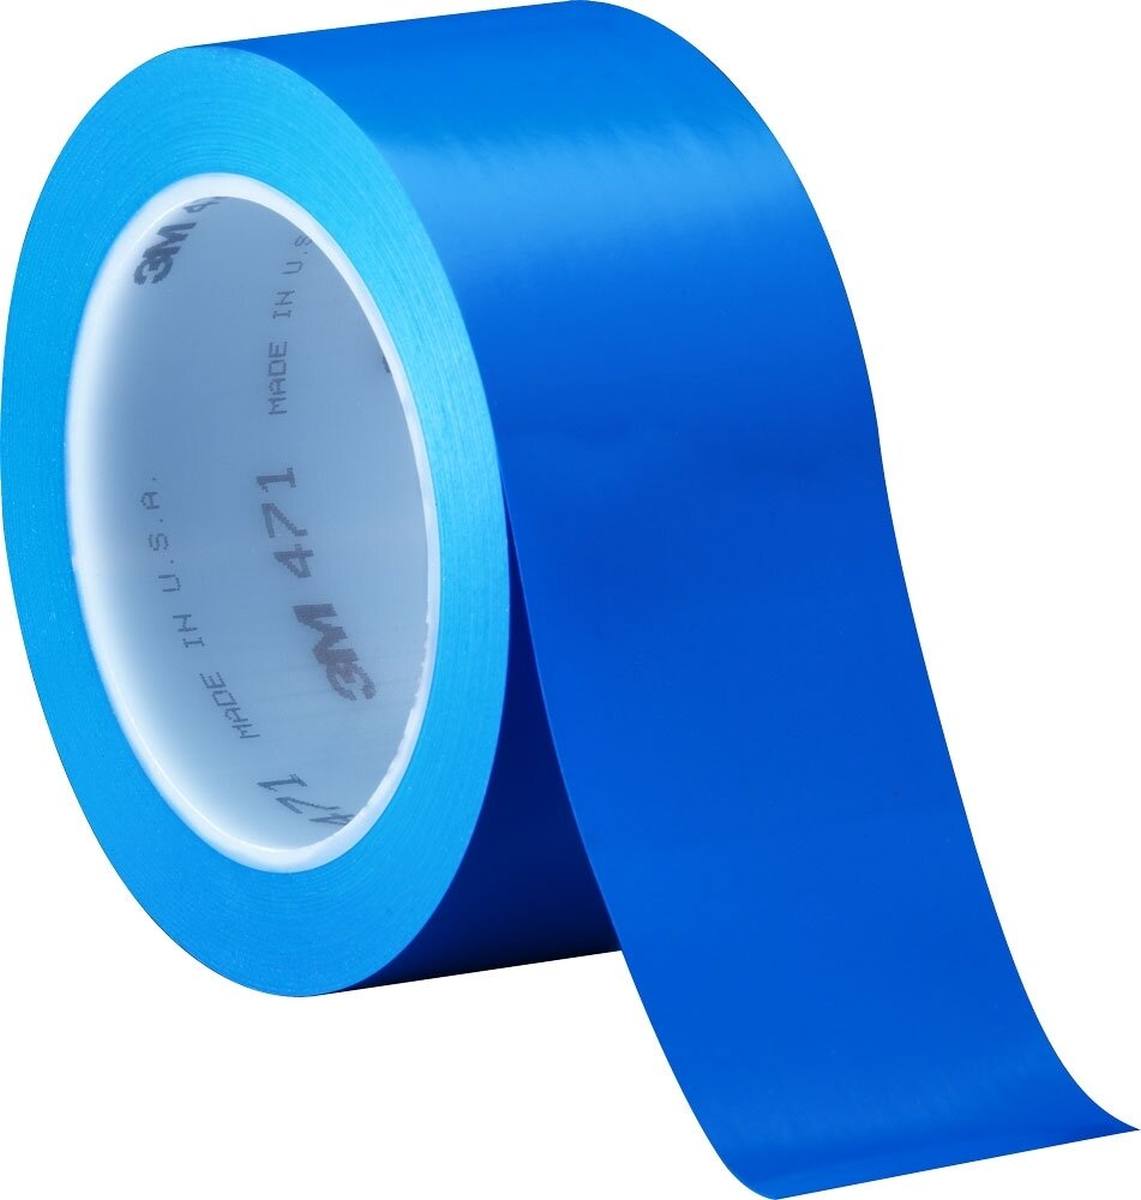 Nastro adesivo 3M in PVC morbido 471 F, blu, 50 mm x 33 m, 0,13 mm